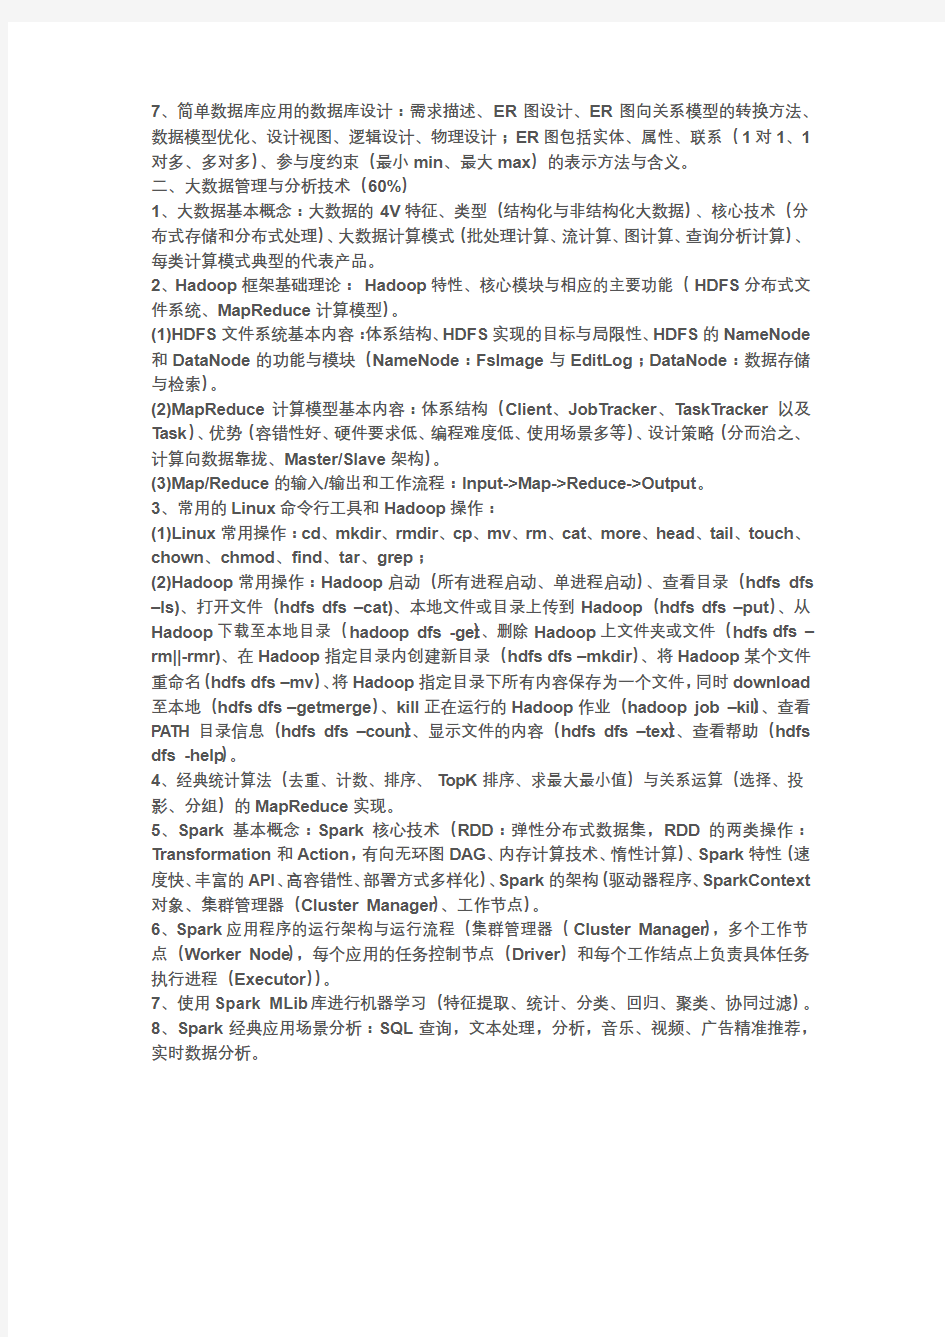 浙江省高校计算机等级考试 三级《数据管理与分析技术》考试大纲(2019版)